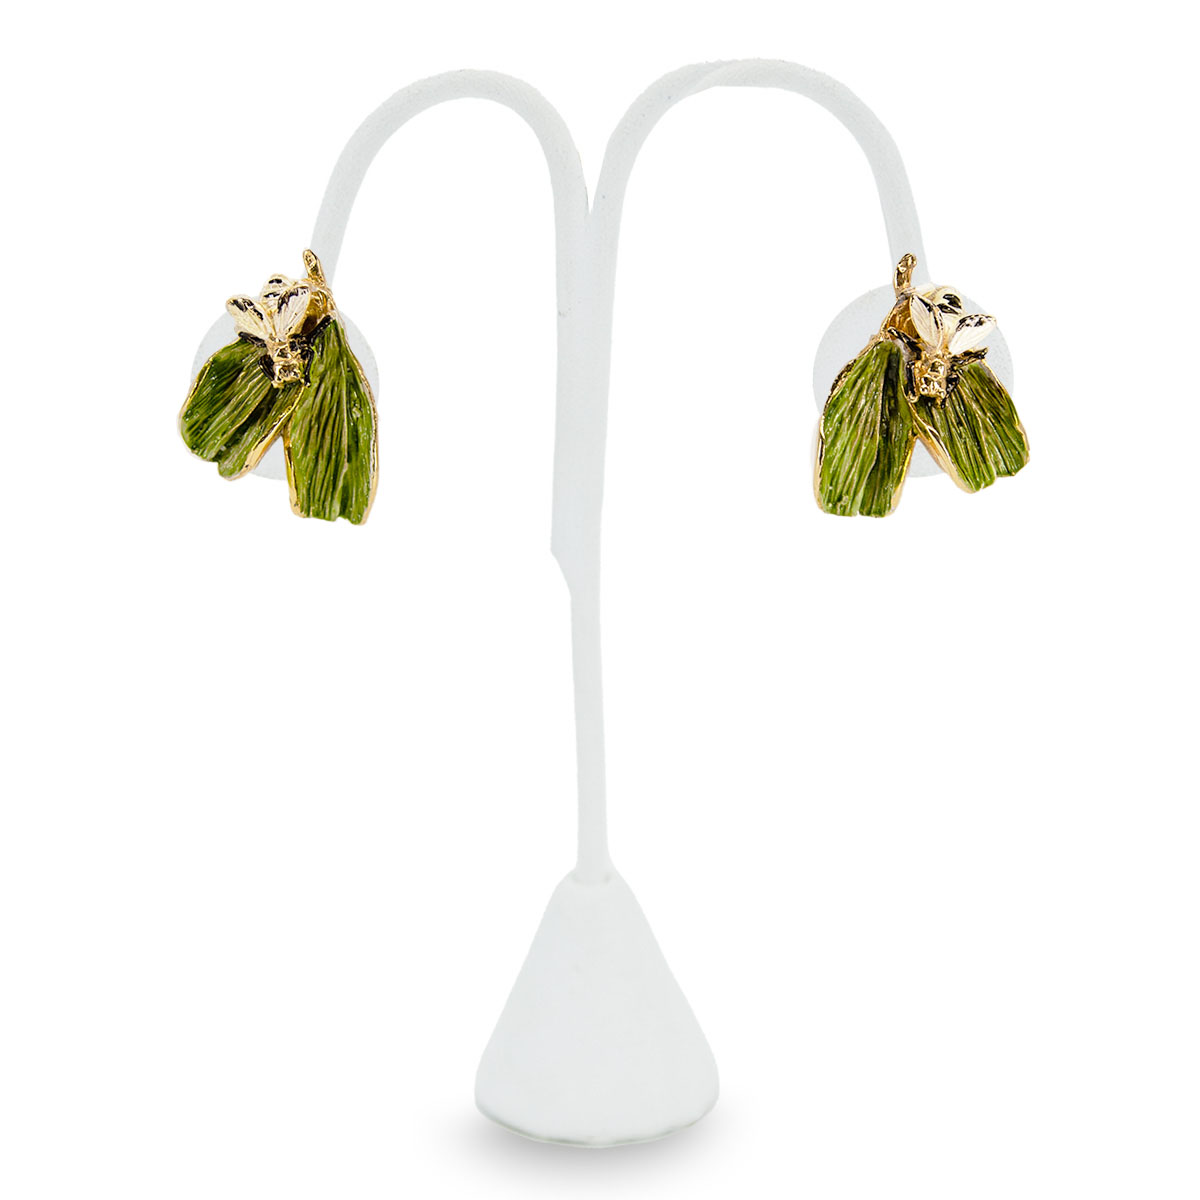 Hattie Carnegie earrings